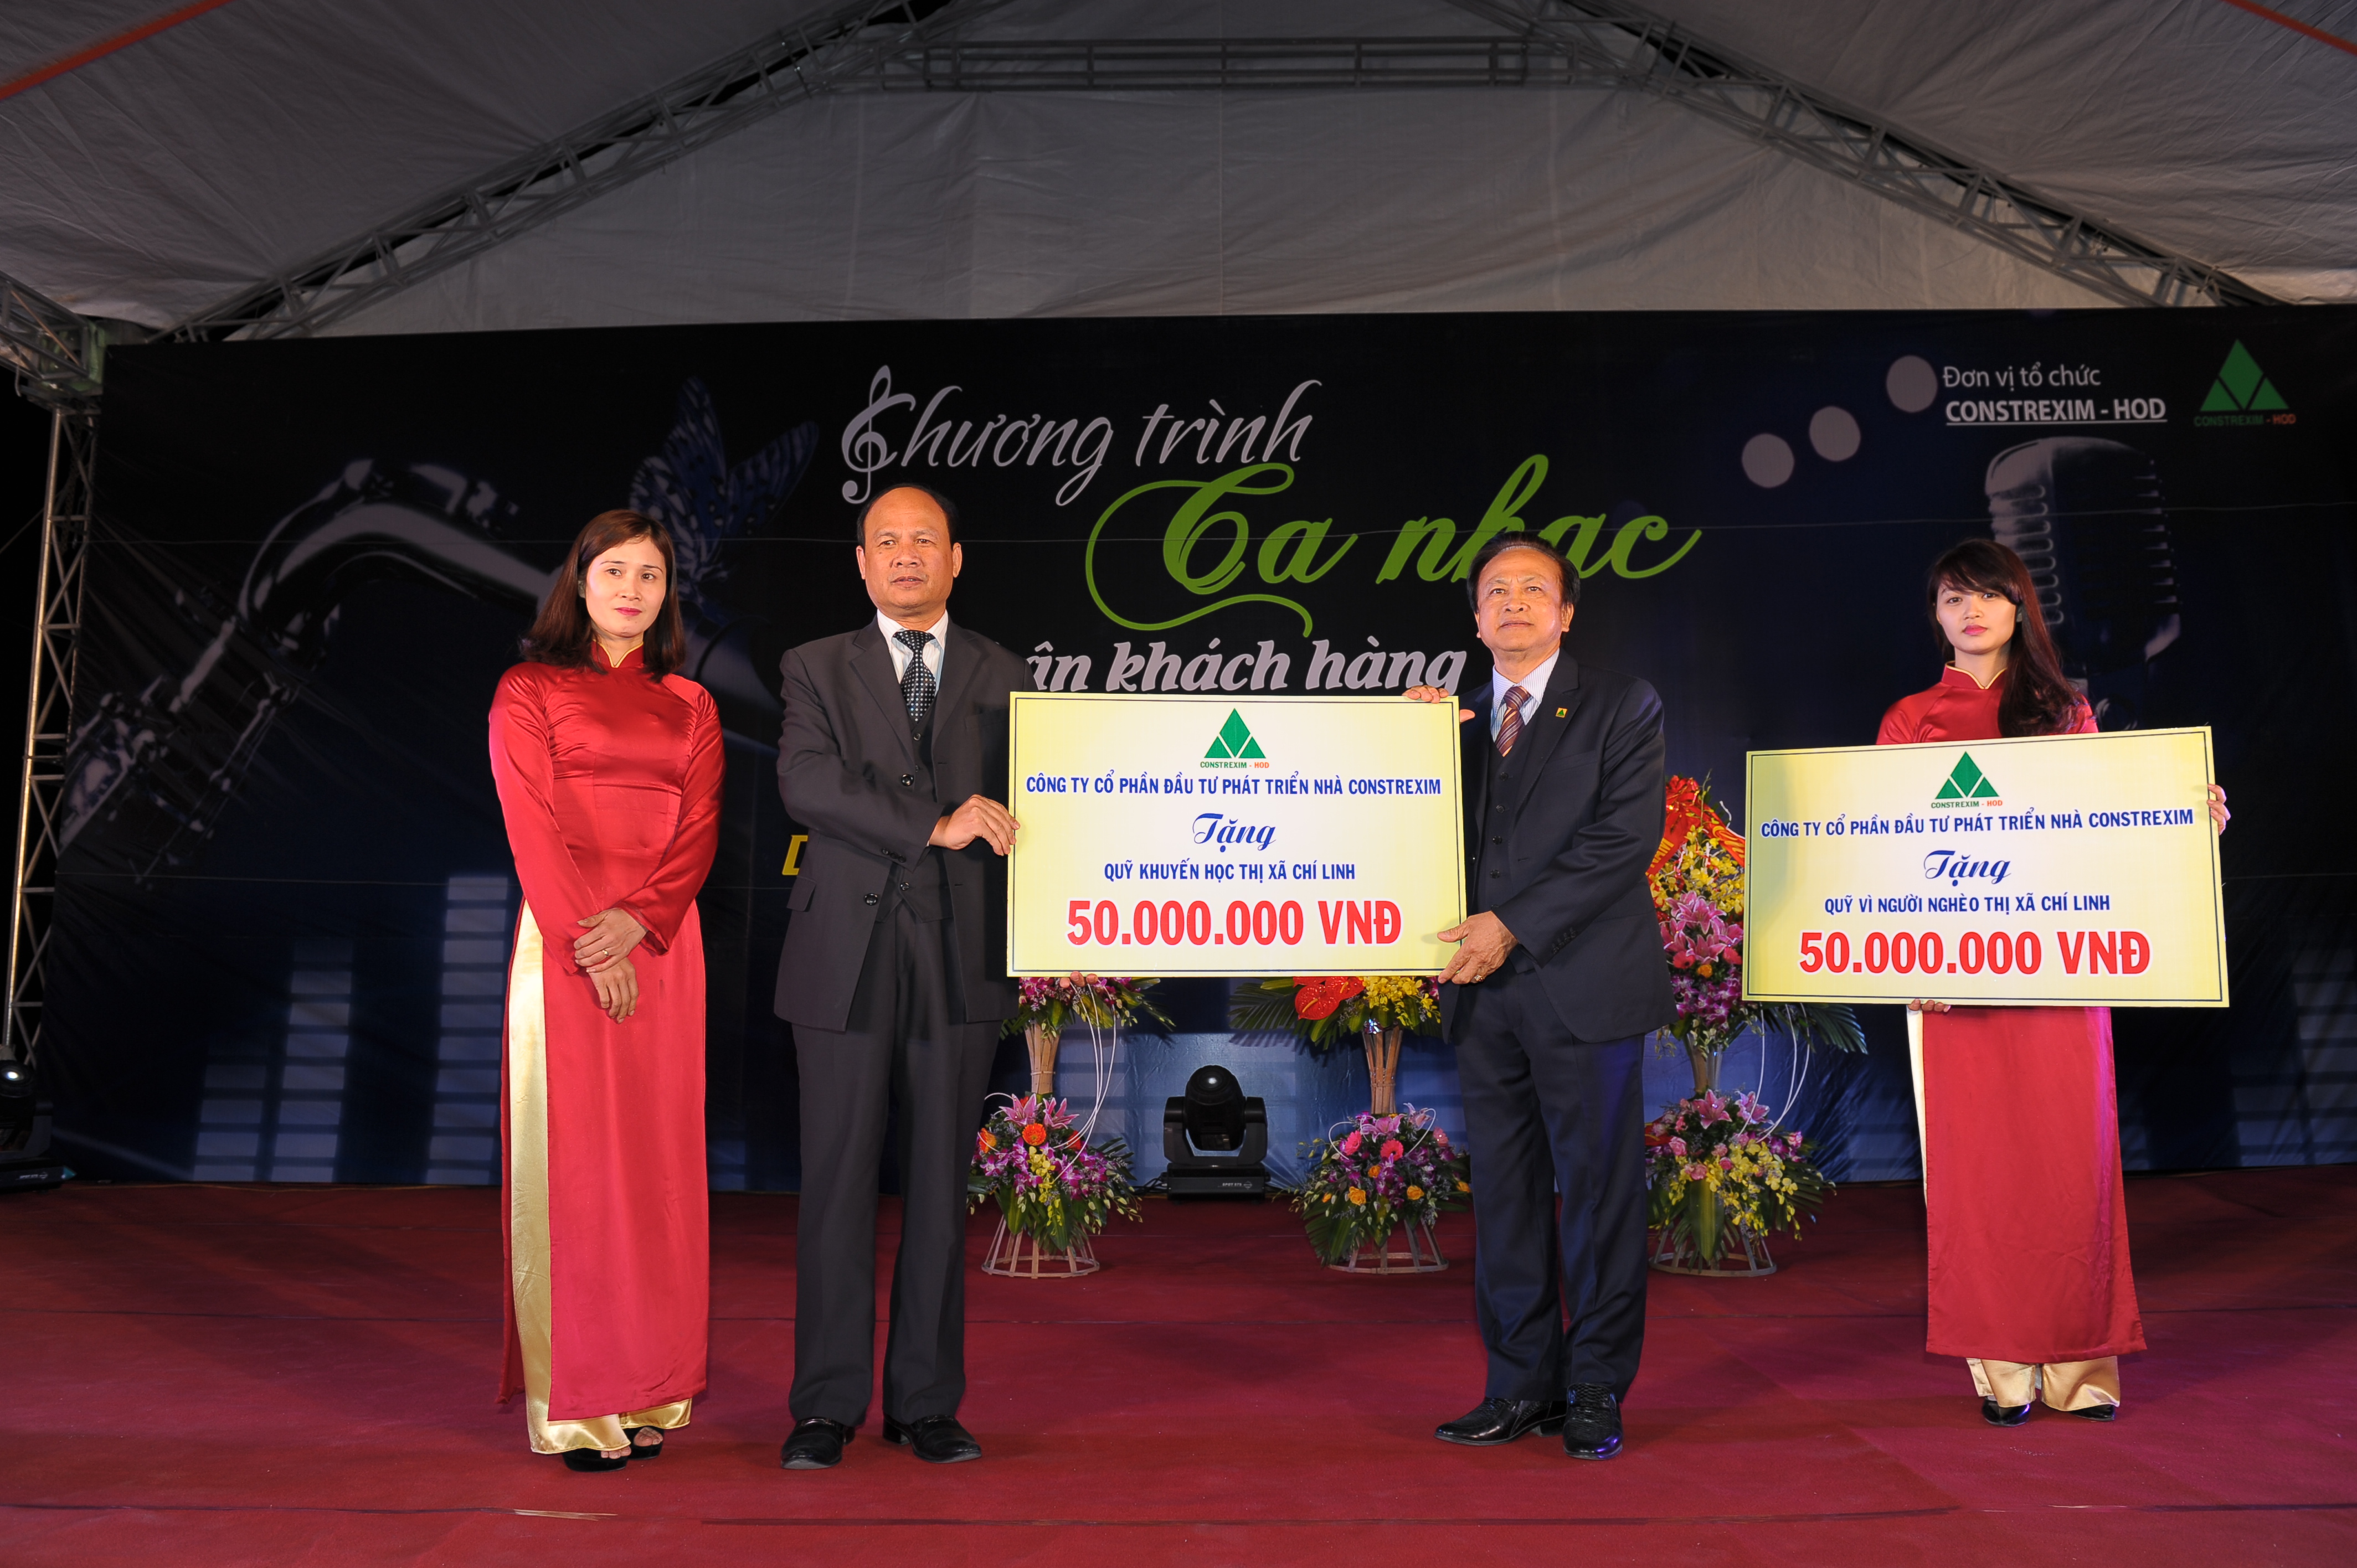 Công ty tặng quỹ khuyến học thành phố Chí Linh, tỉnh Hải Dương  50.000.000đ